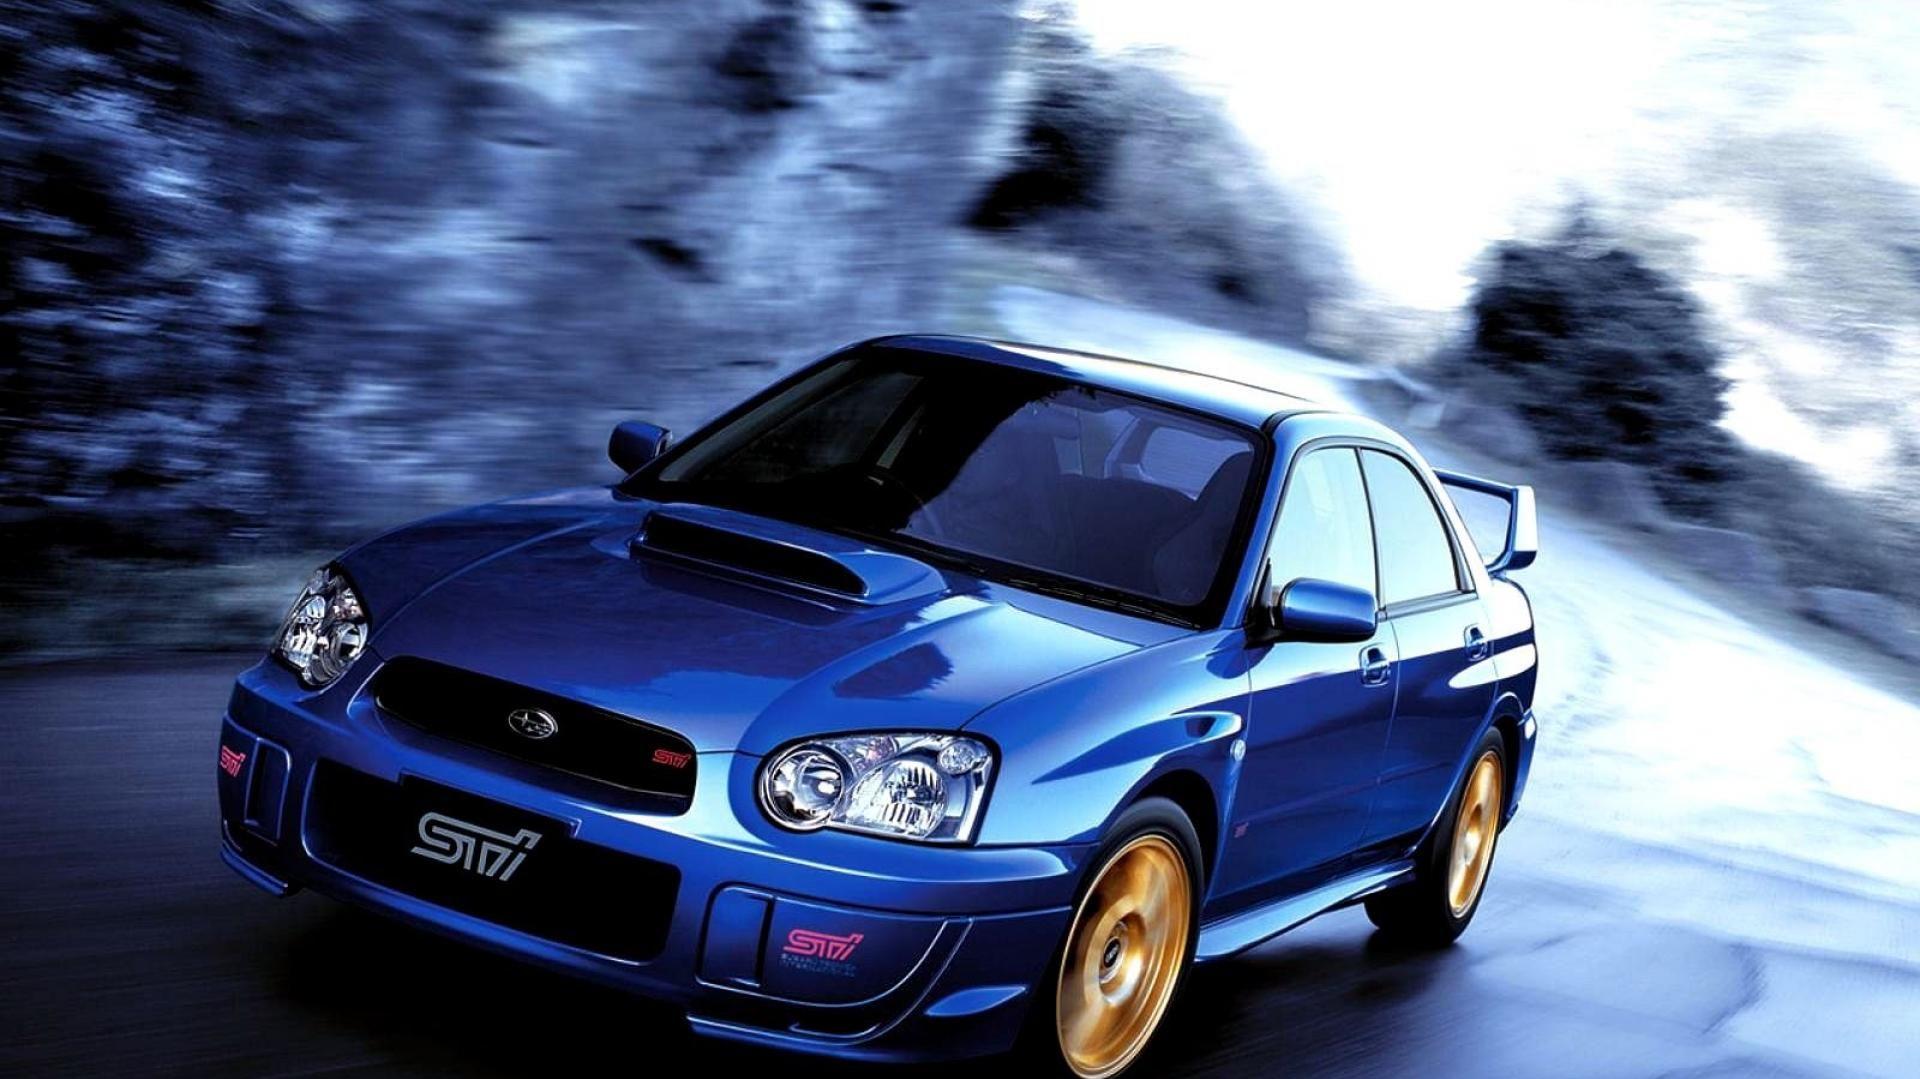 Subaru Impreza Car Wallpaper 1080p Wrx Cars